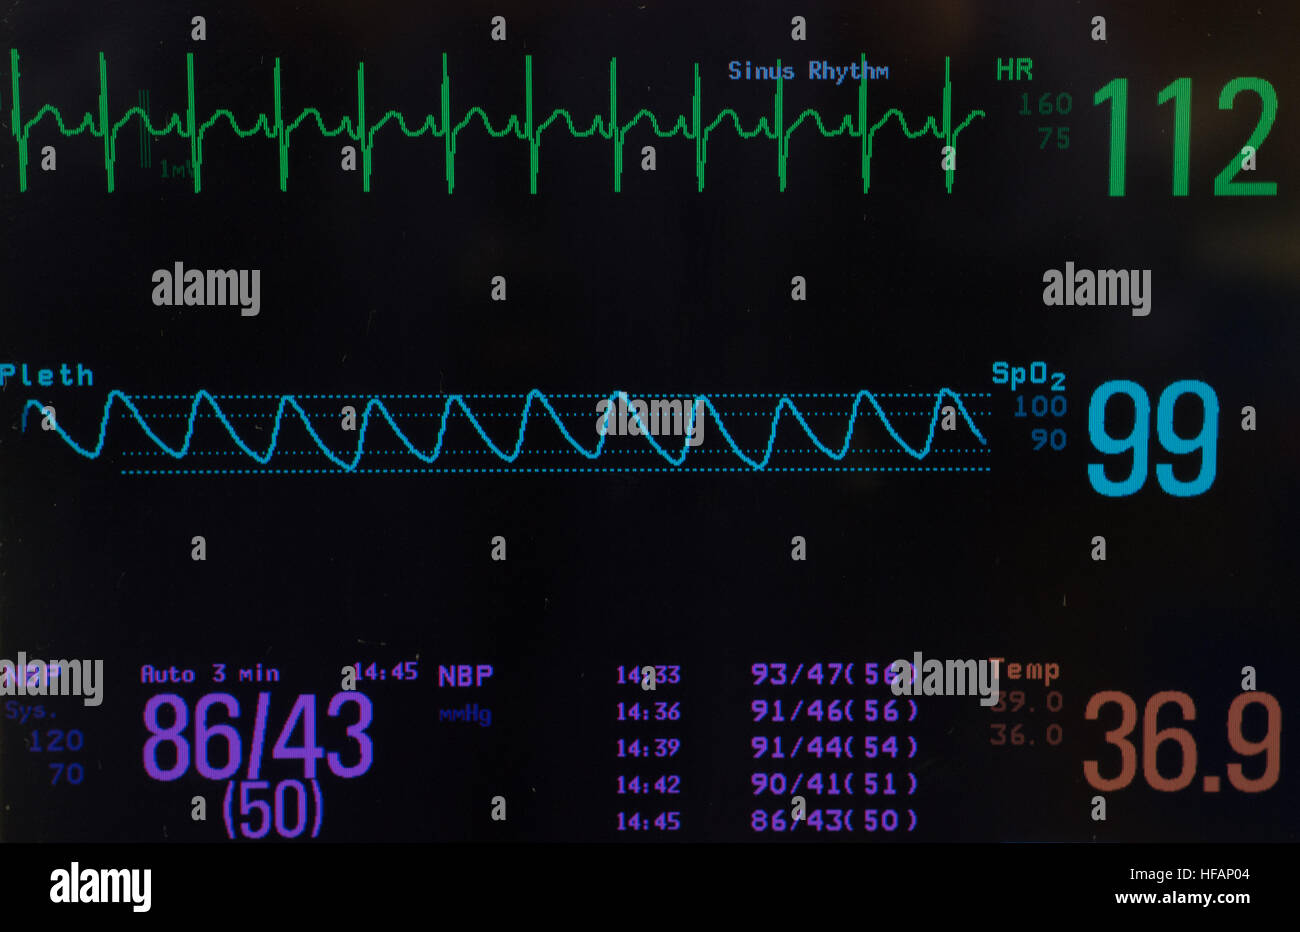 Ceinture cardio Moniteur de fréquence cardiaque avec ECG avec